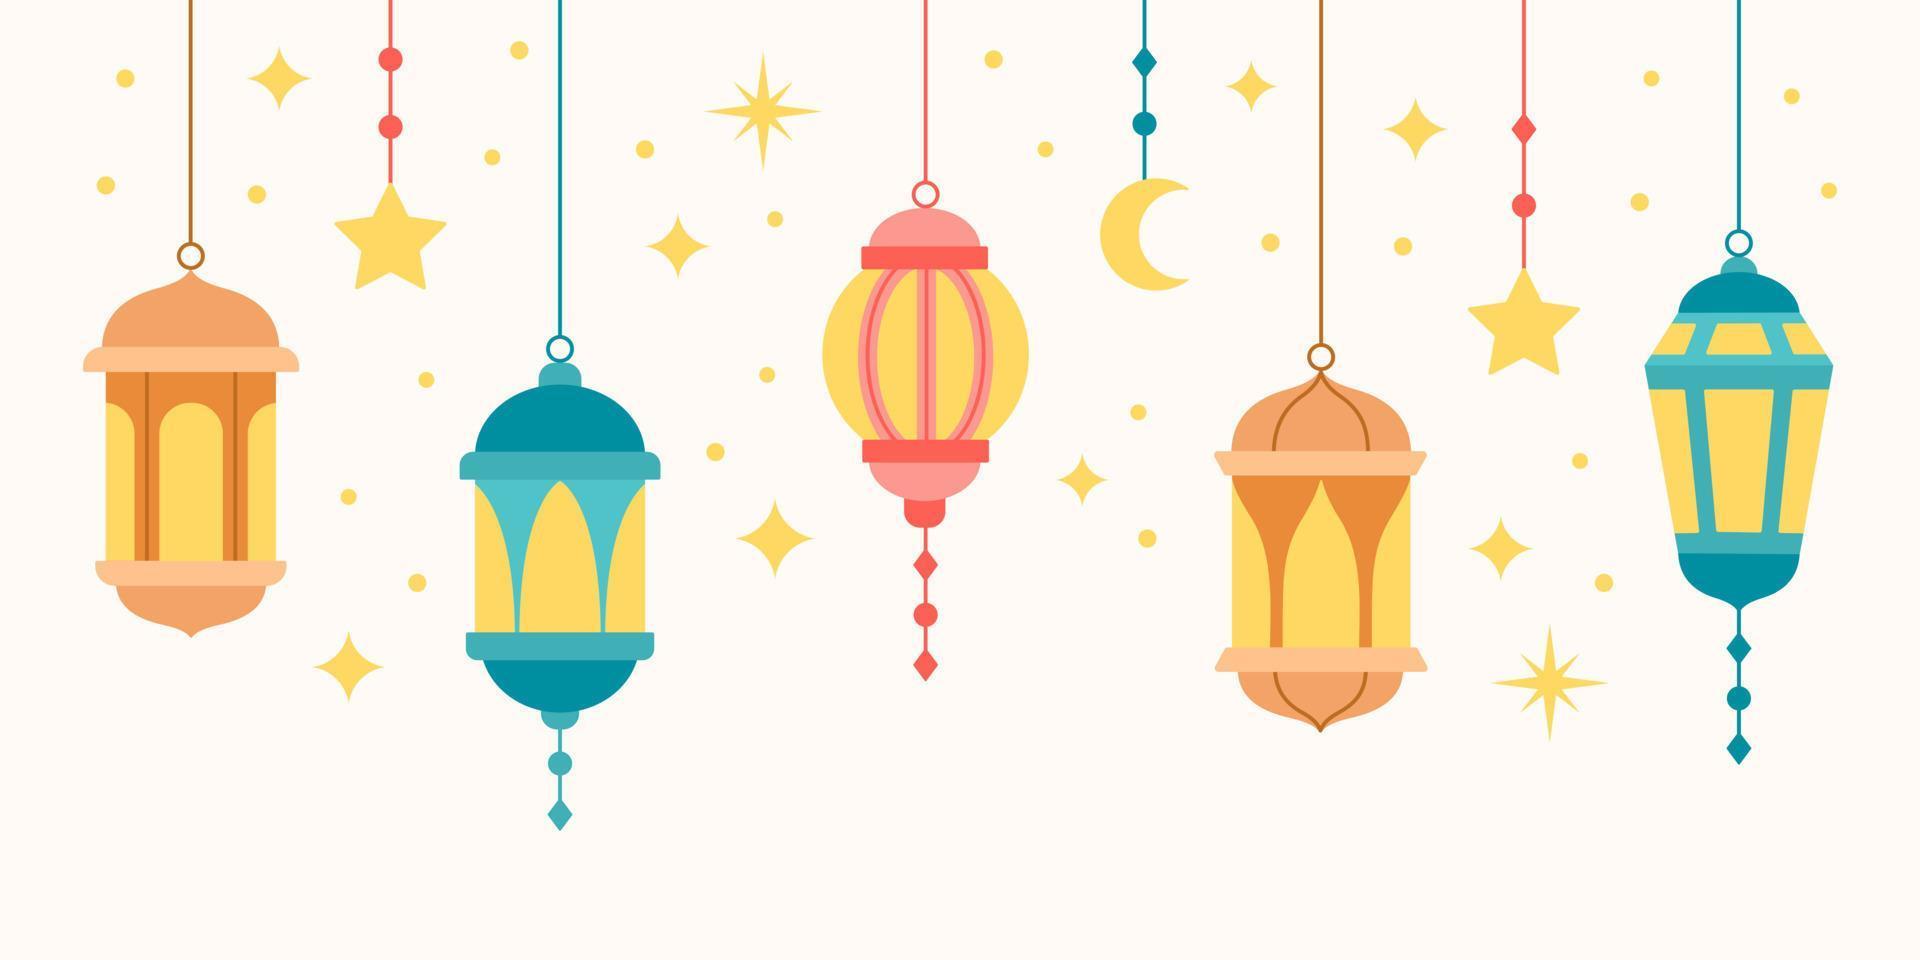 traditionnel est lanterne collection. arabe musulman coloré pendaison les lampes, croissants et étoiles. vecteur